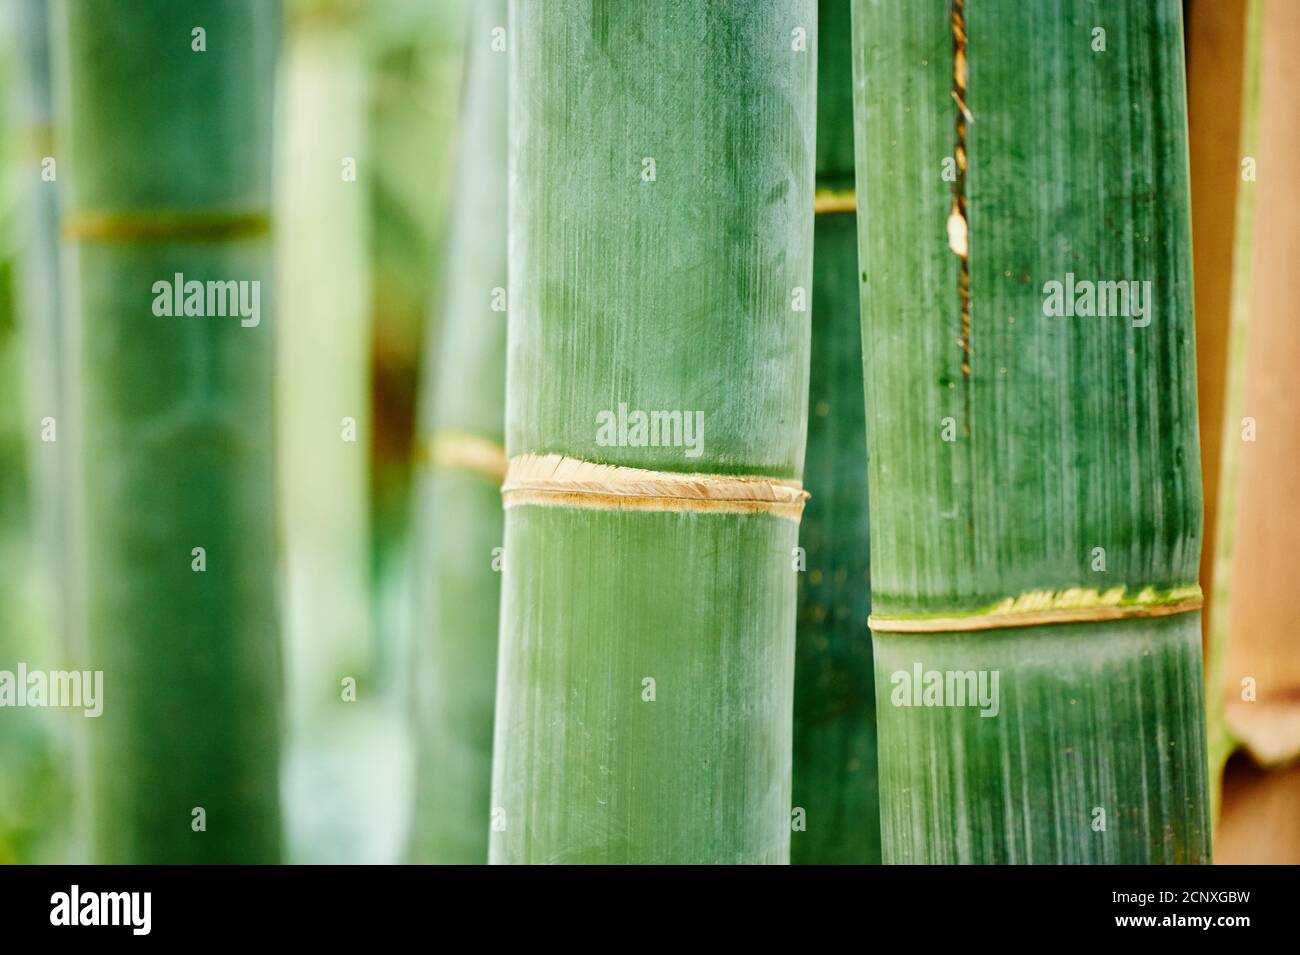 Giant bamboo (Dendrocalamus giganteus), tree trunks, close-up Stock Photo